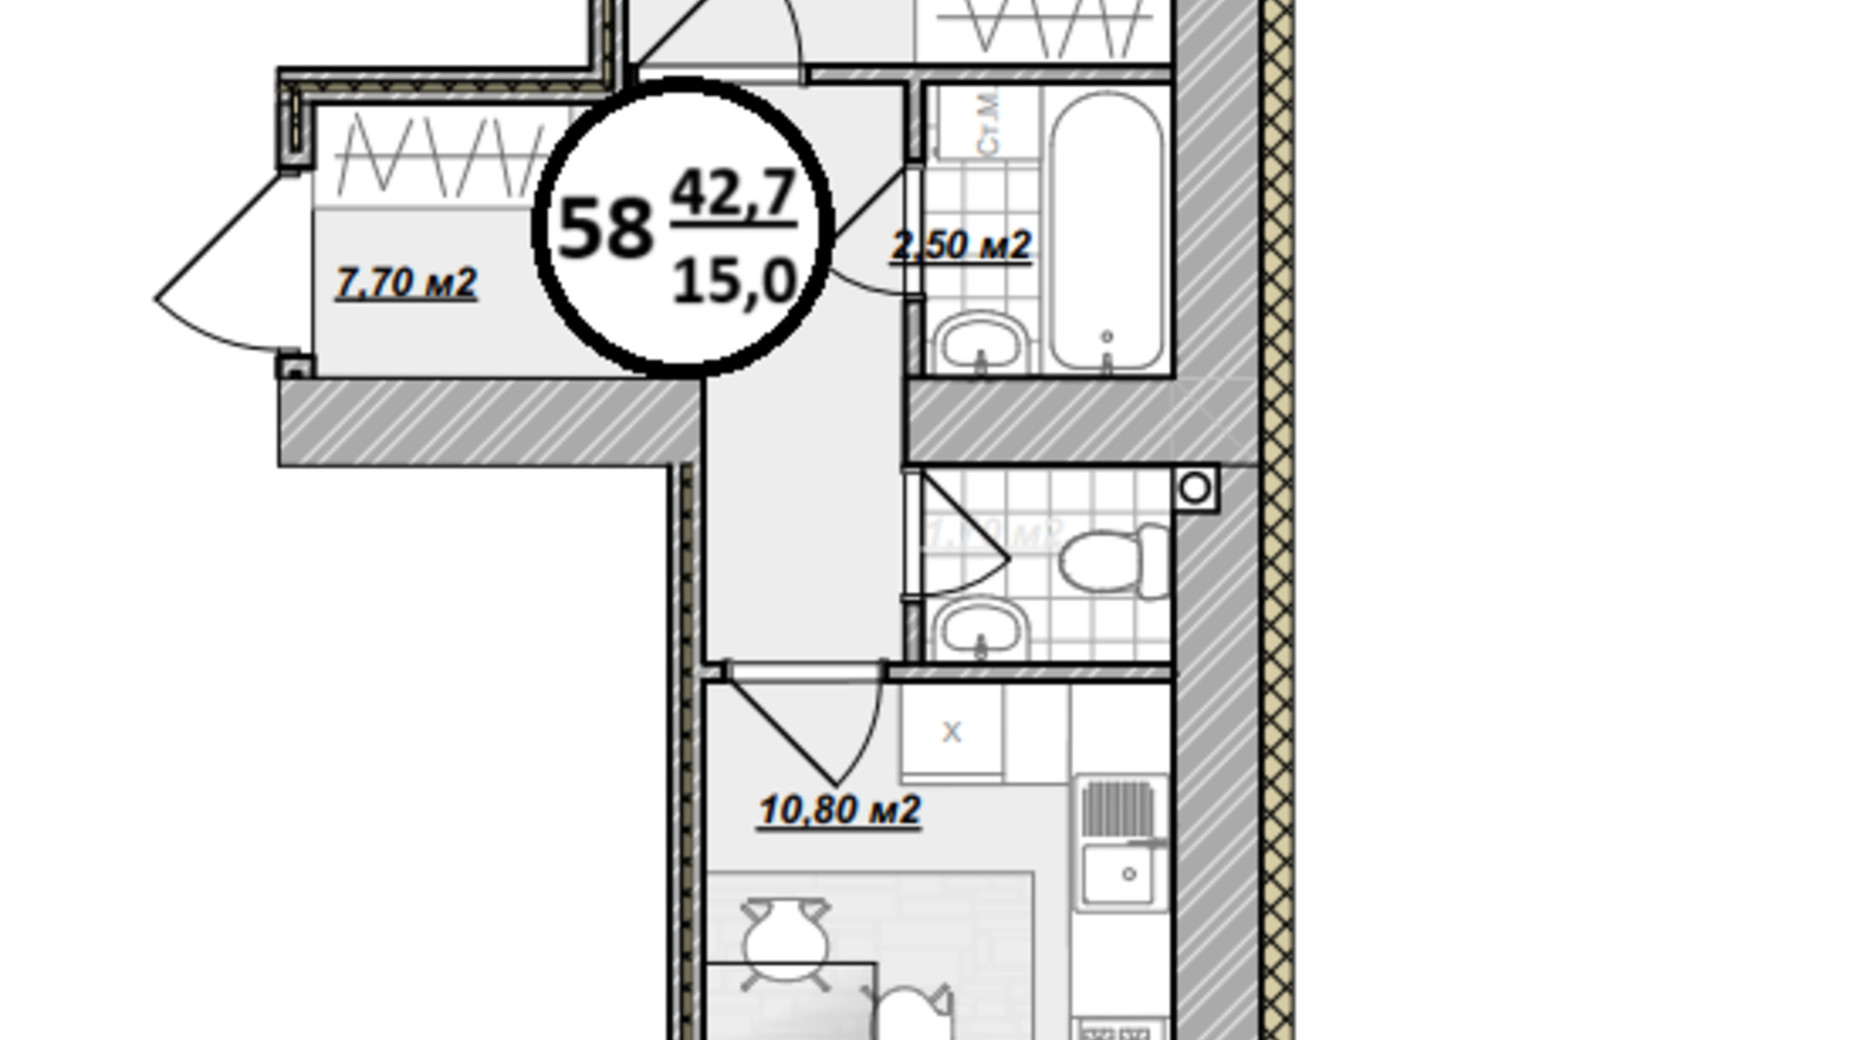 Планування 1-кімнатної квартири в ЖК Добробуд 42.7 м², фото 700489